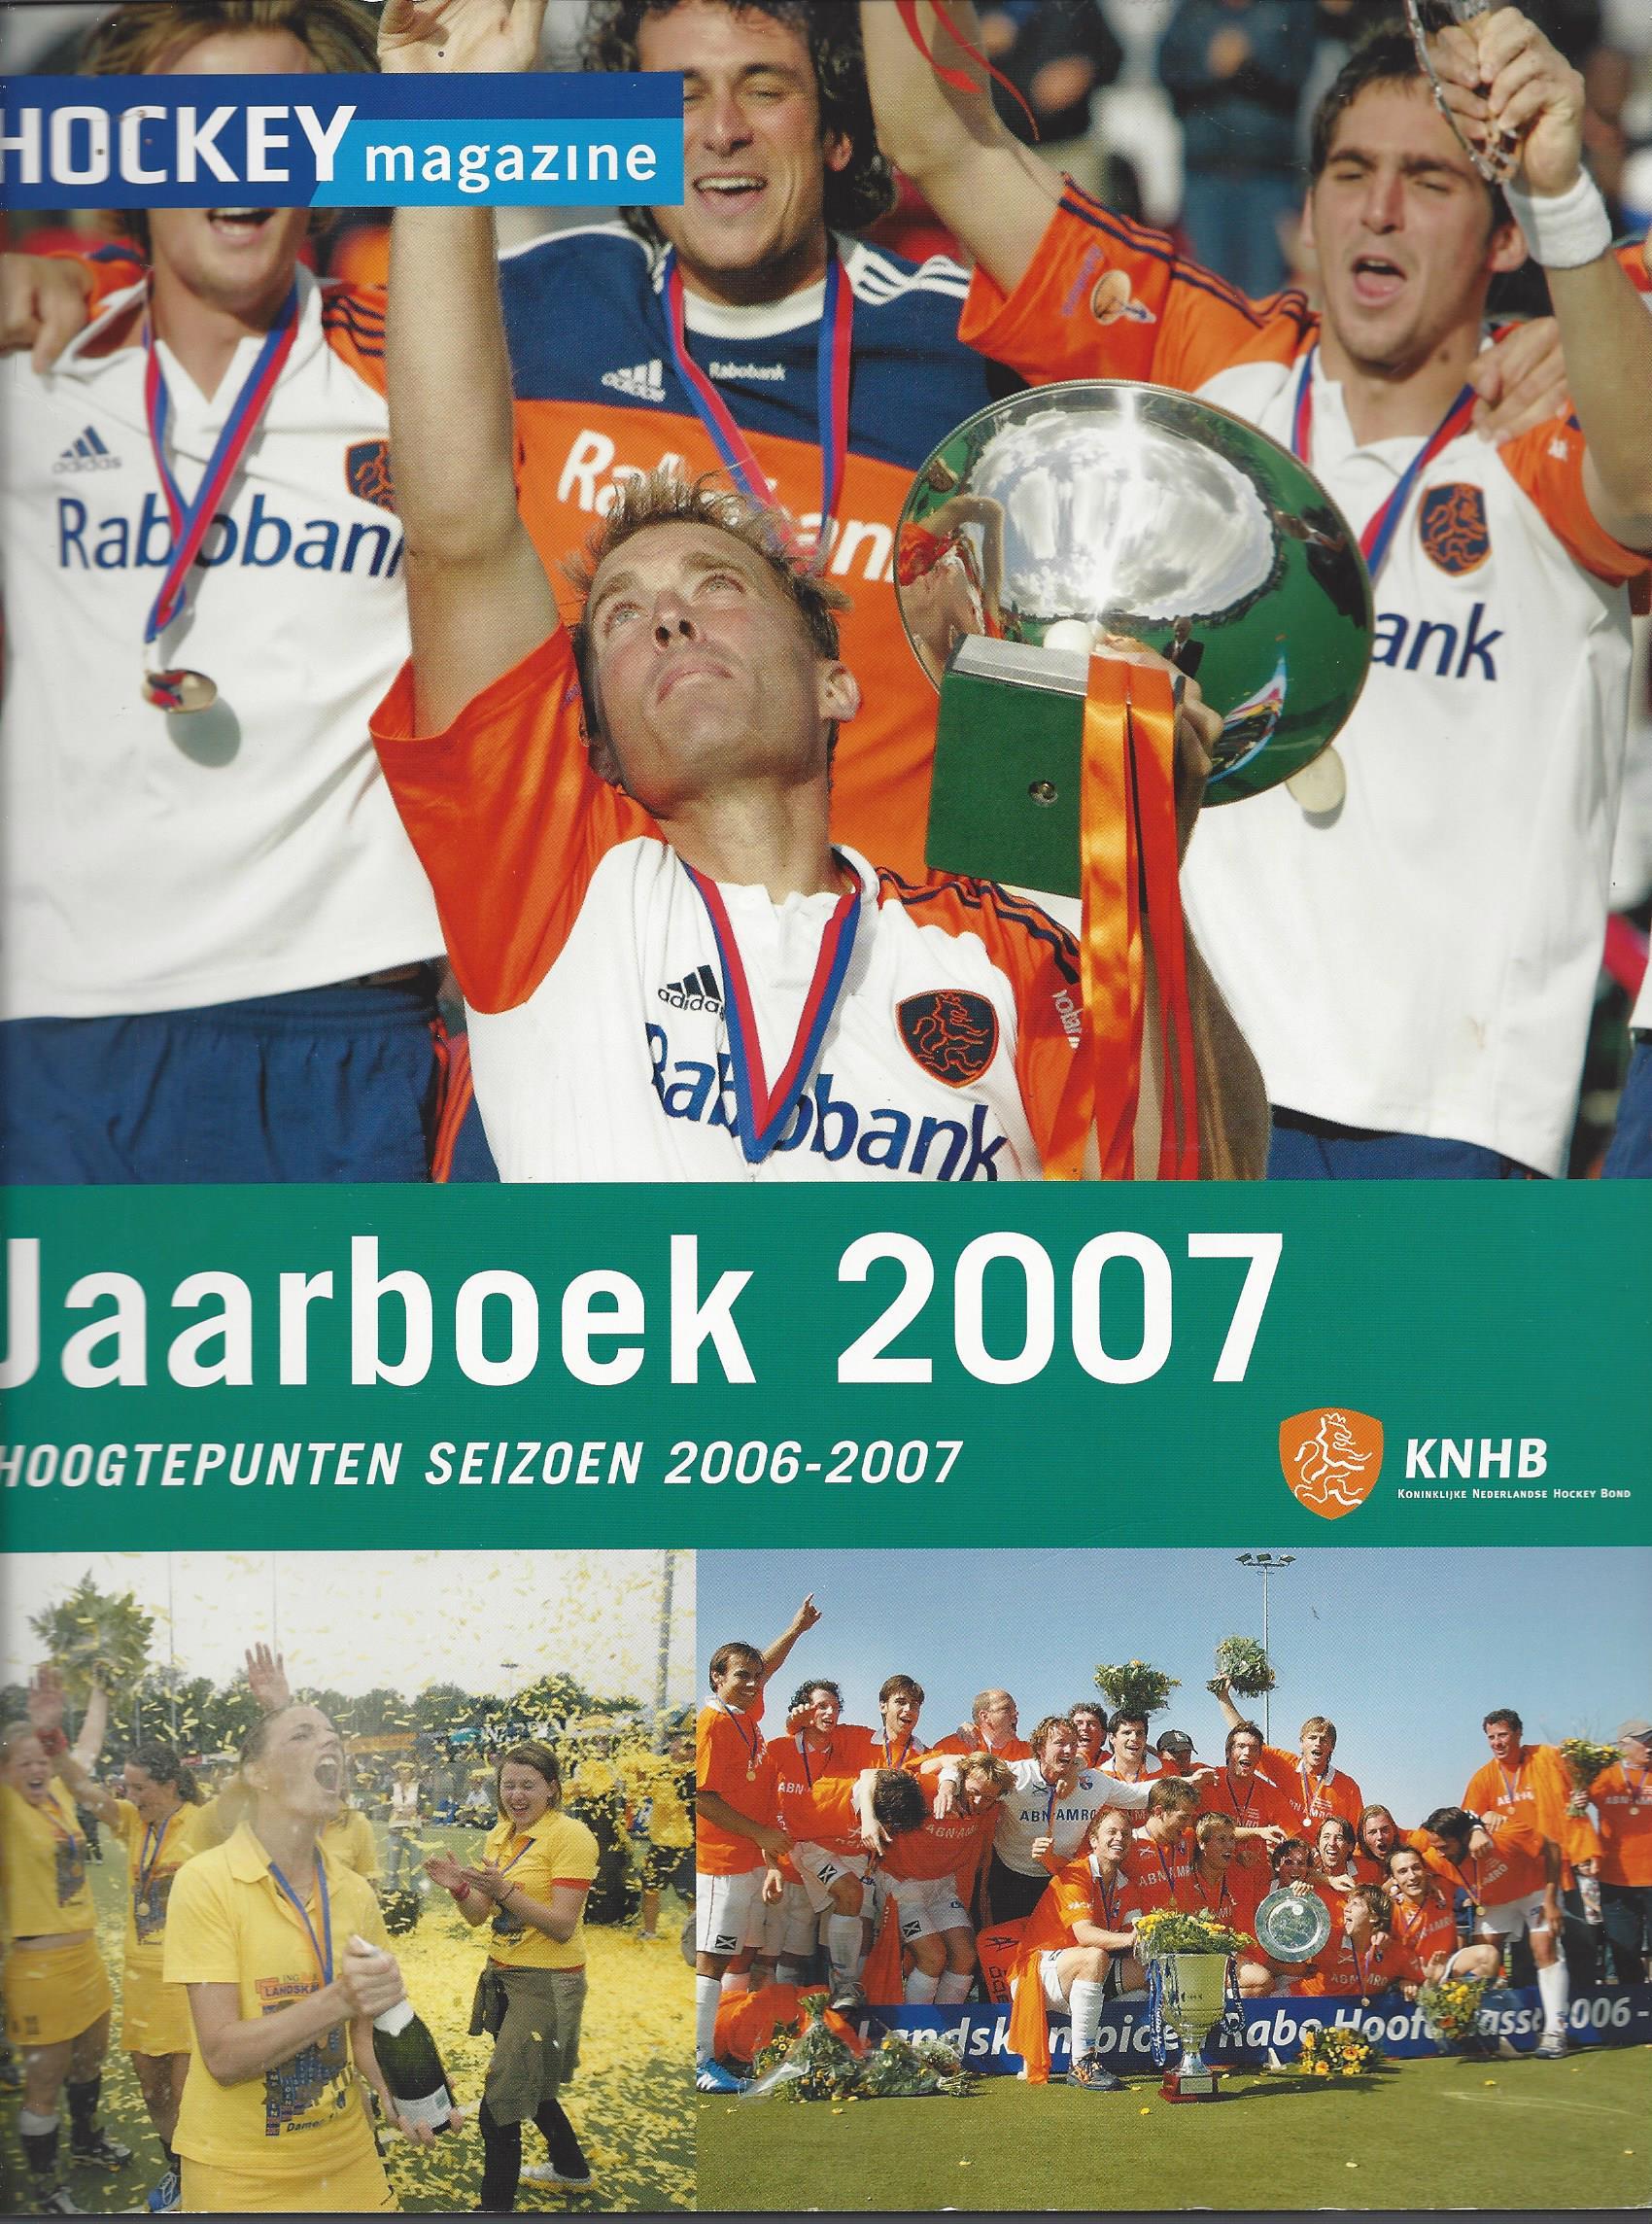 Bergen , Jeroen van - Hockey Magazine - Jaarboek 2007